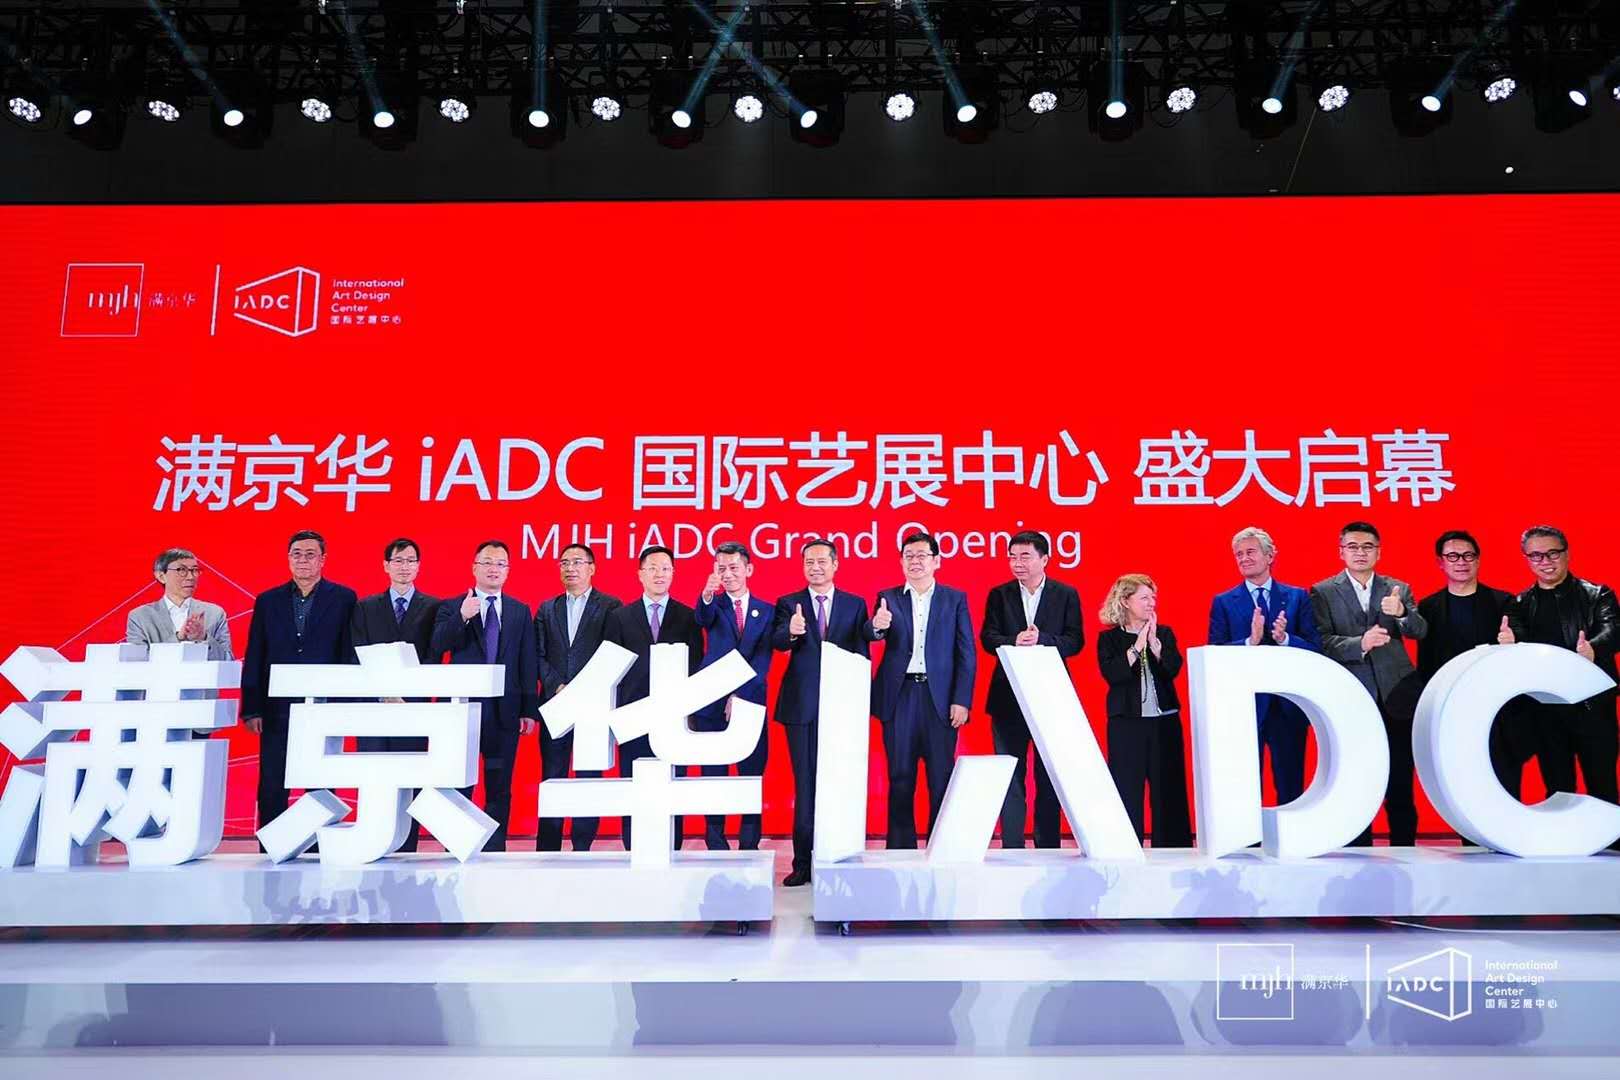 达信雅为“满京华iADC国际艺展中心”提供翻译服务